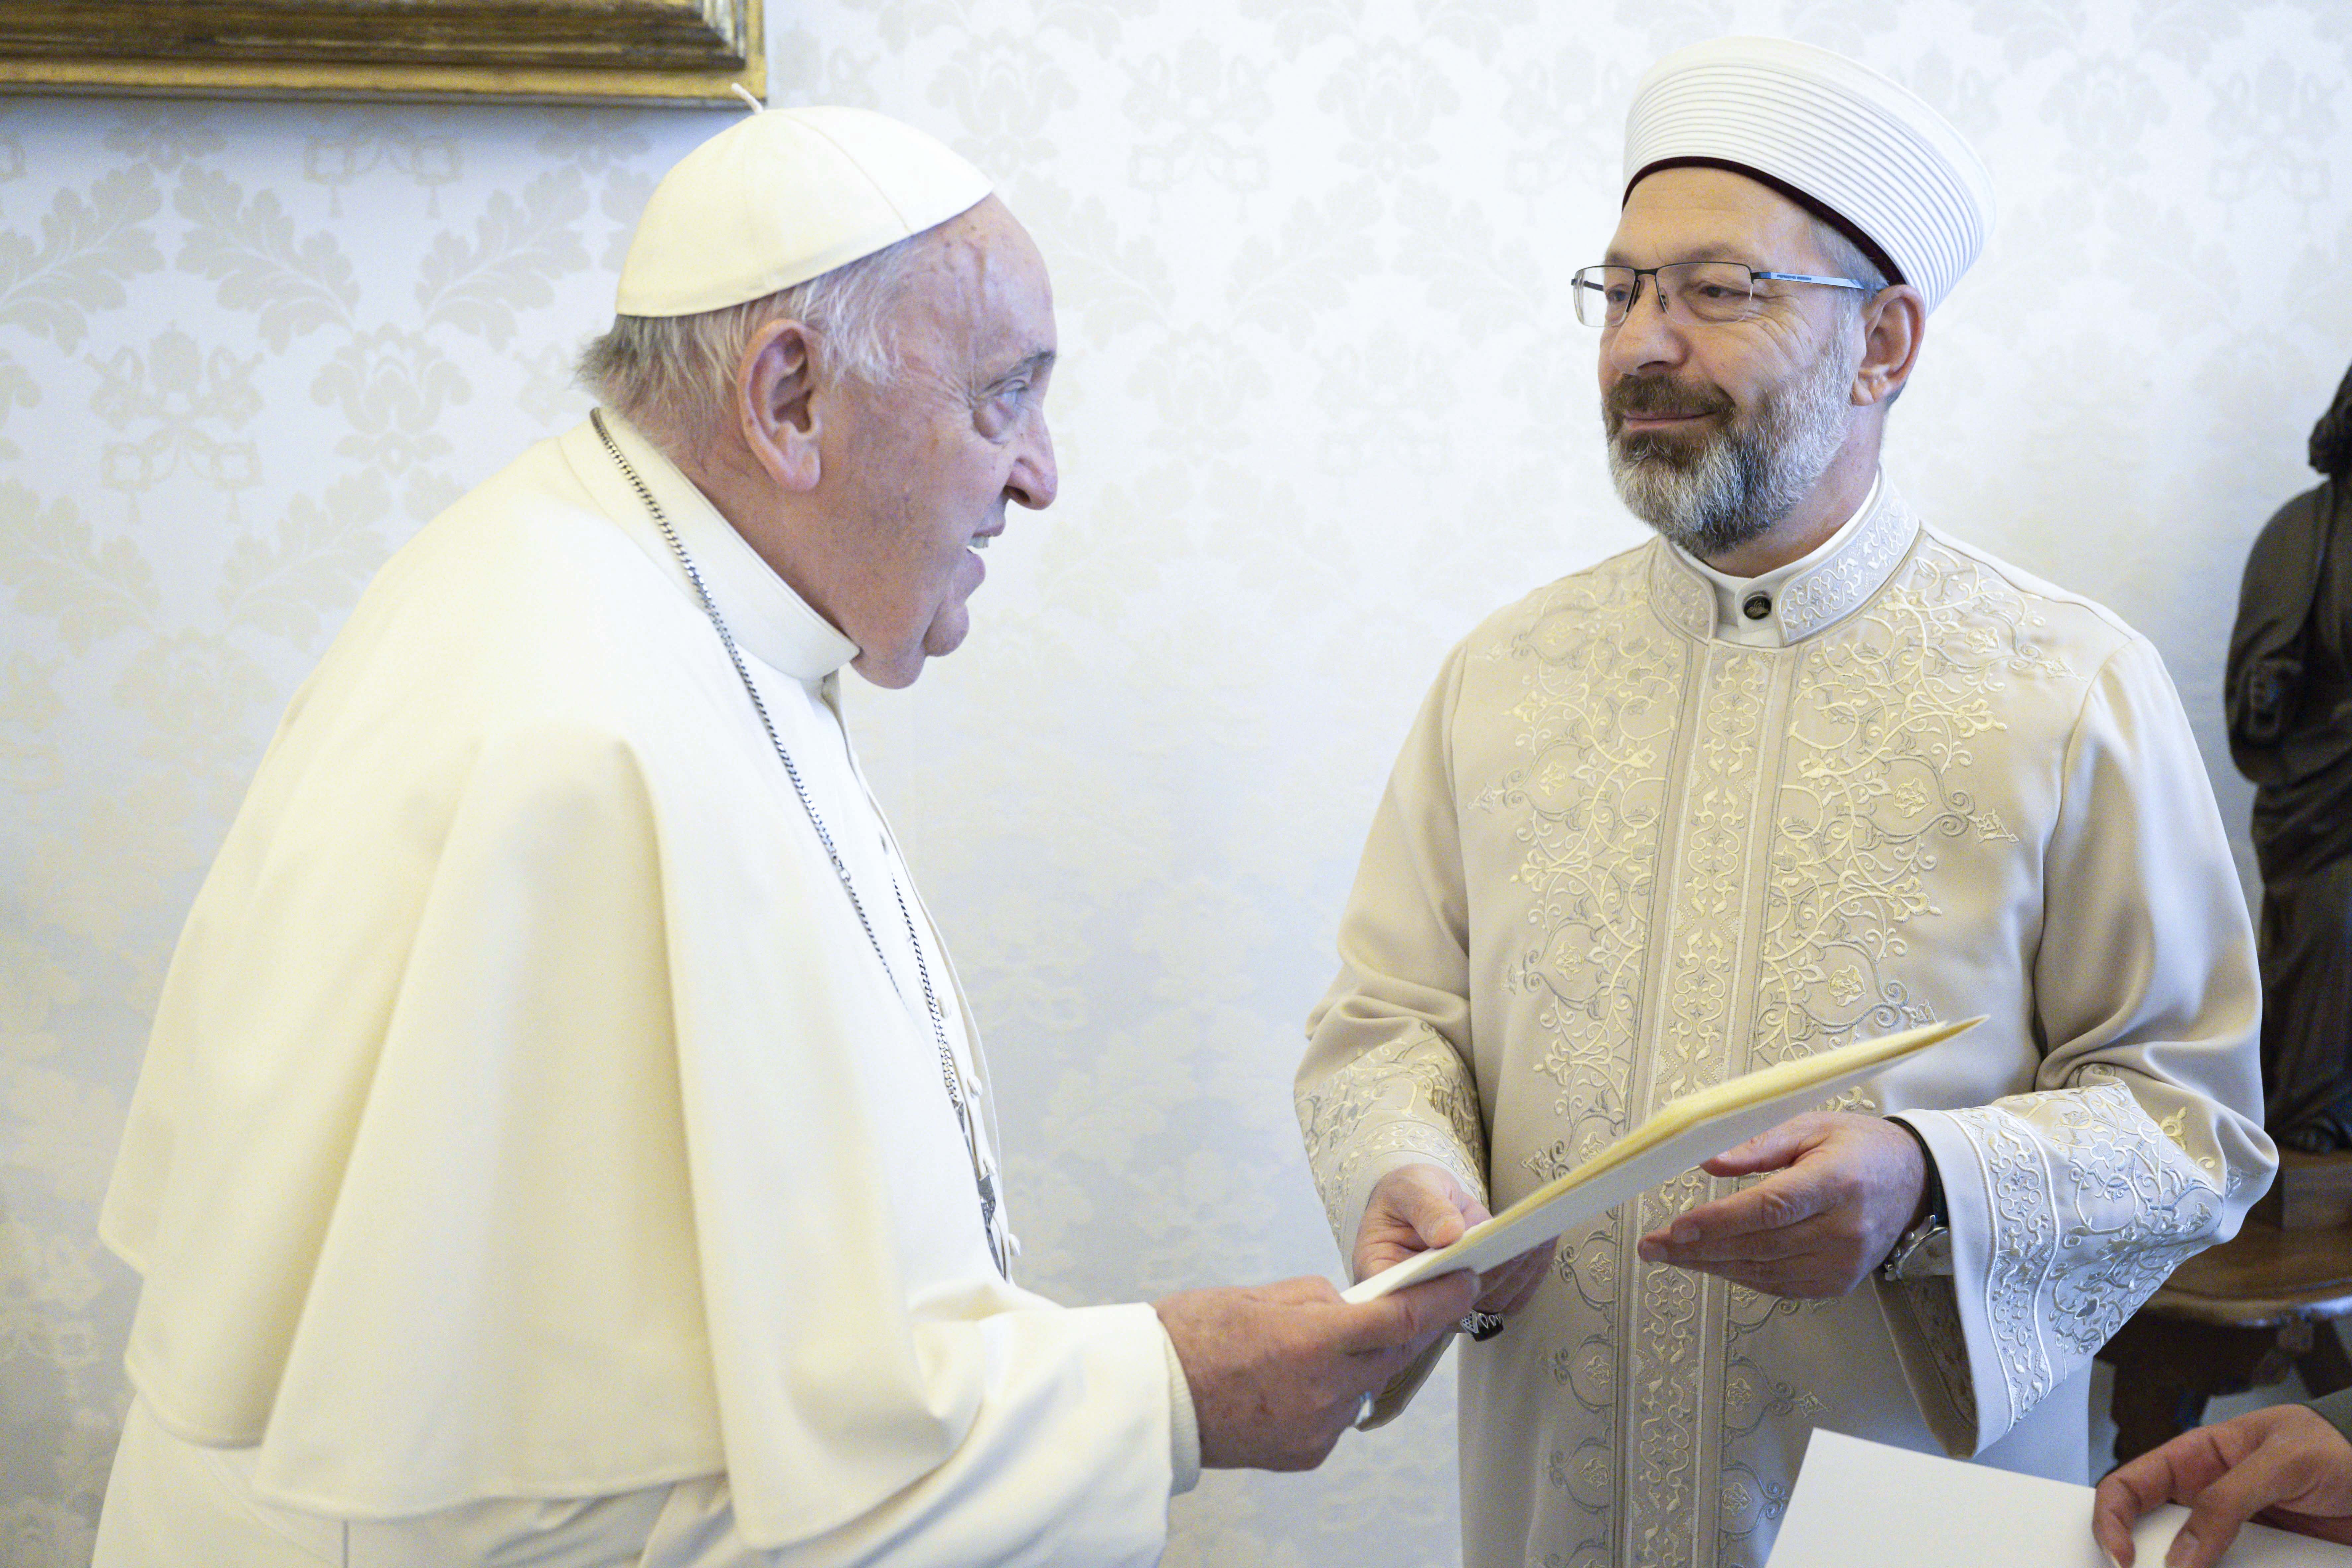 Papa Franciscus'tan Cumhurbaşkanı Erdoğan'a Dünya Barışına Yaptıkları İçin Teşekkür